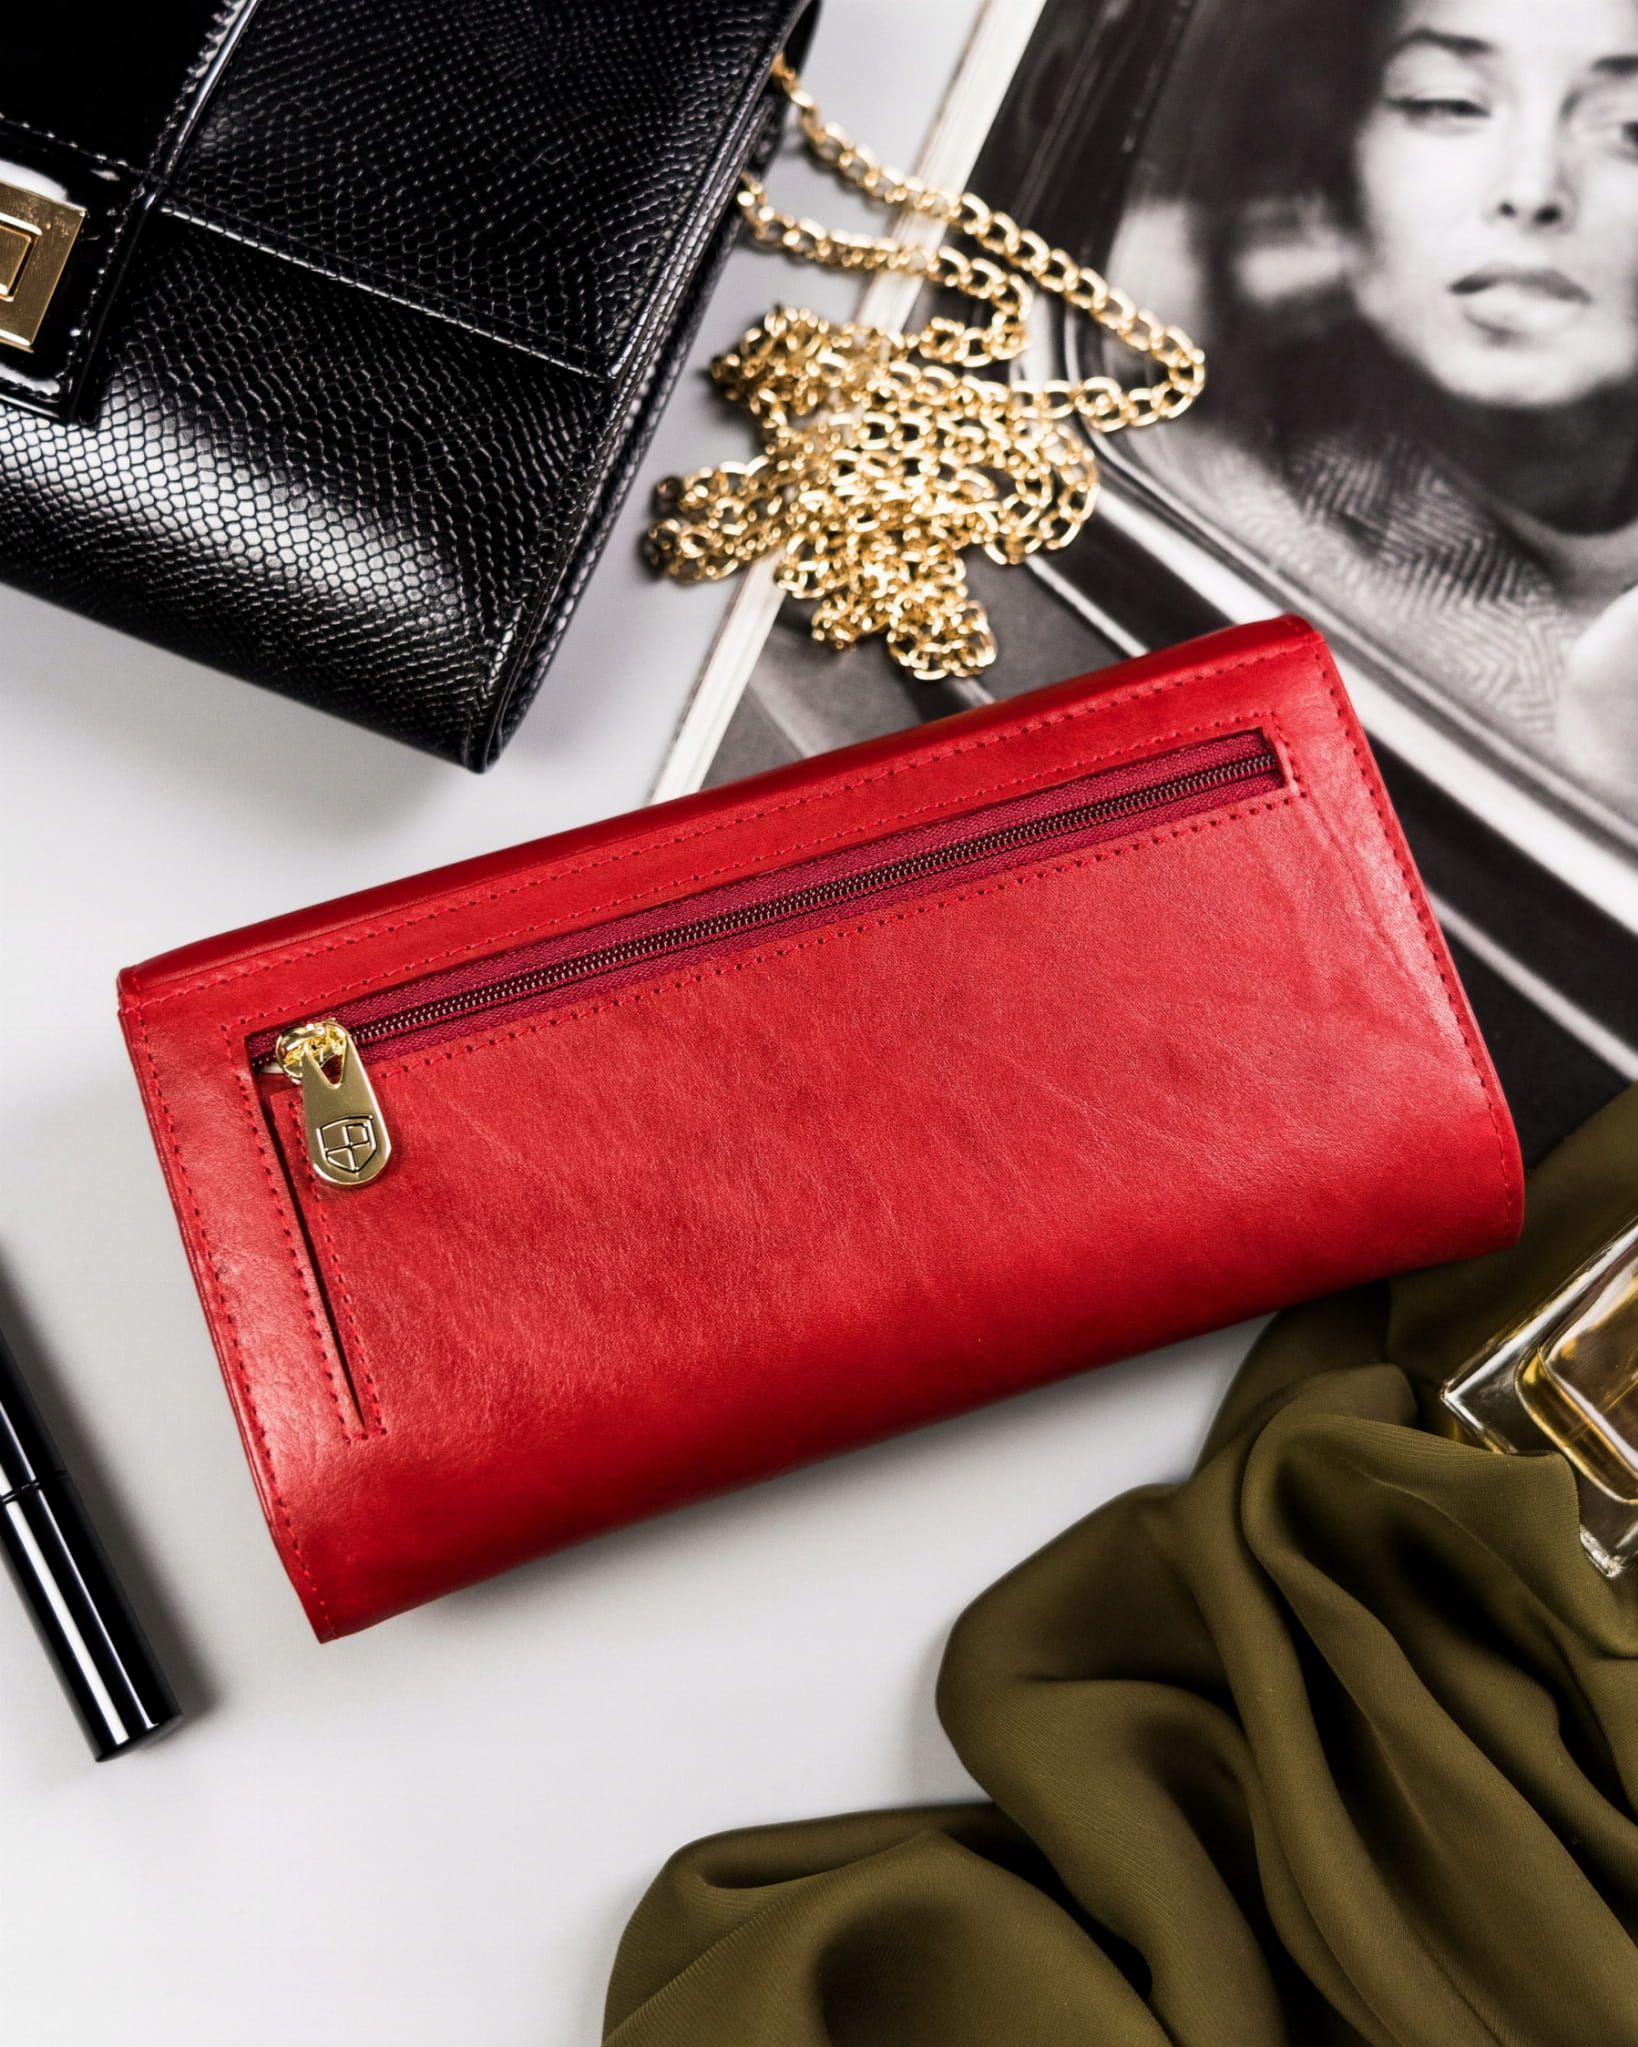 PETERSON portfel damski skórzany elegancki z suwakiem P175 czerwony